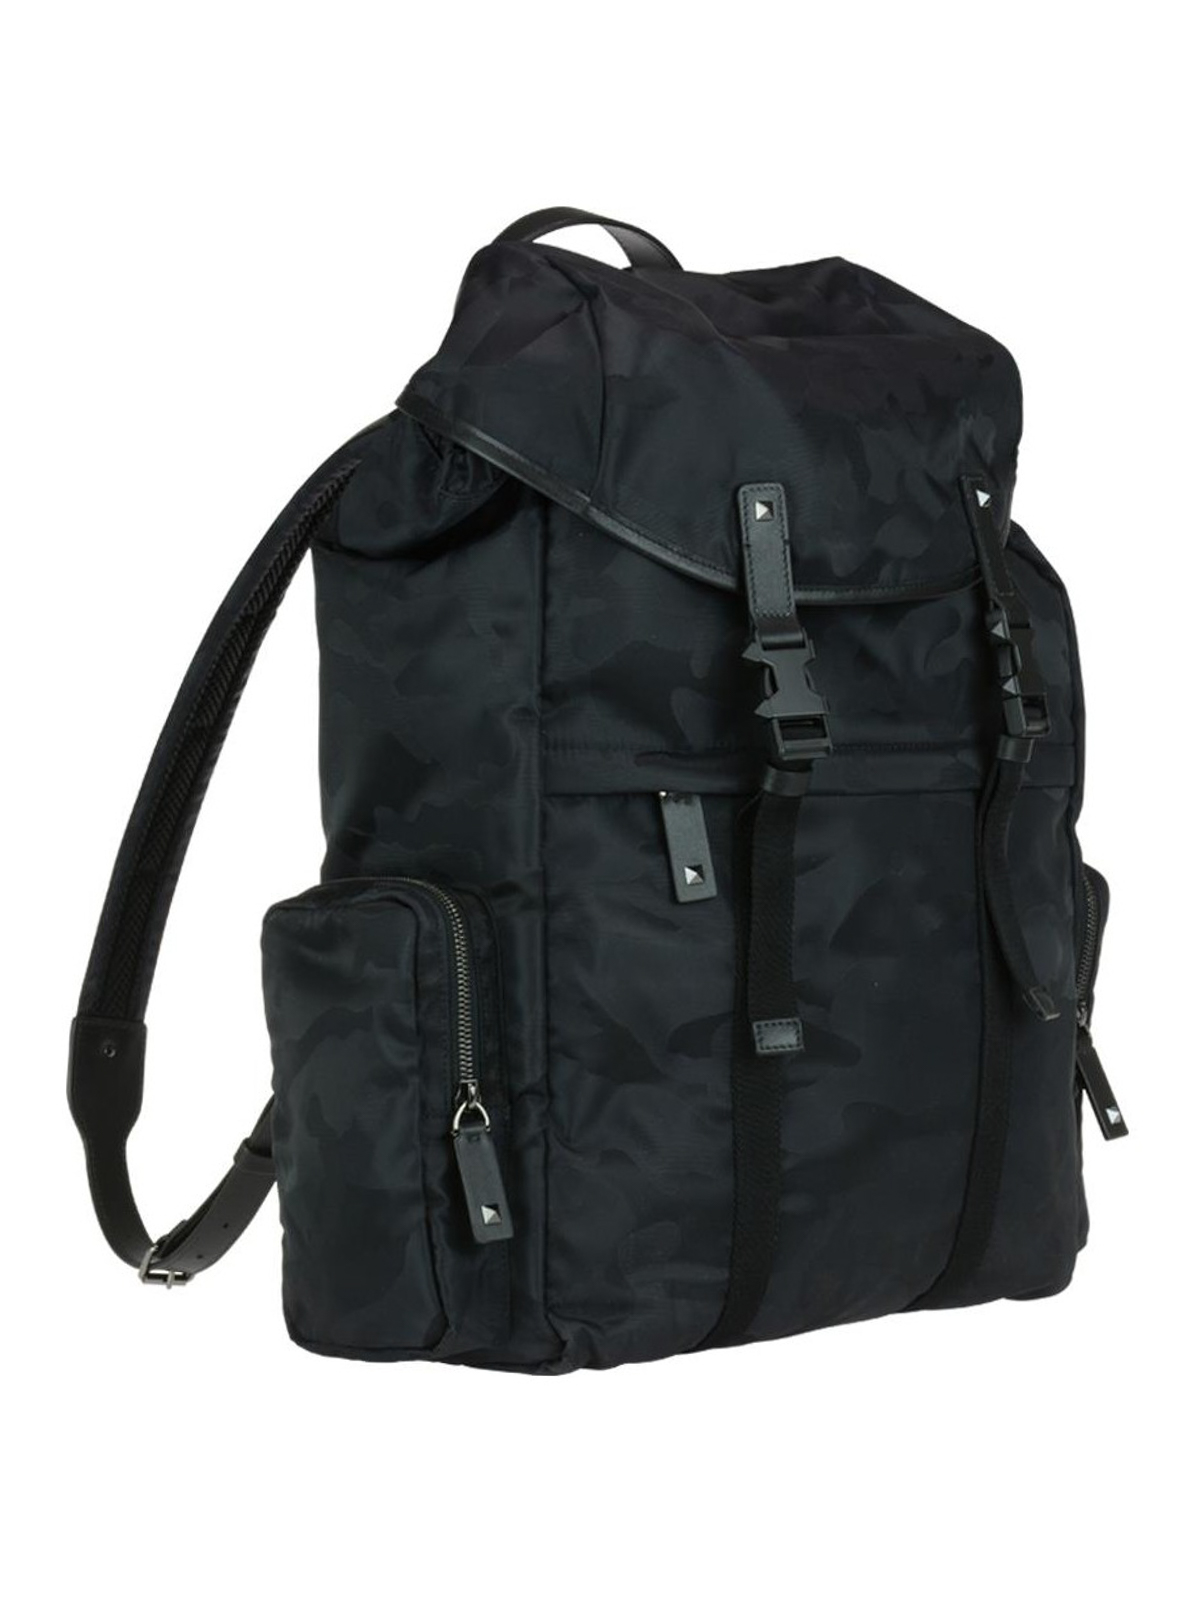 Backpacks Valentino Garavani - Camu fabric trekking backpack -  PY2B0645NAI0NO